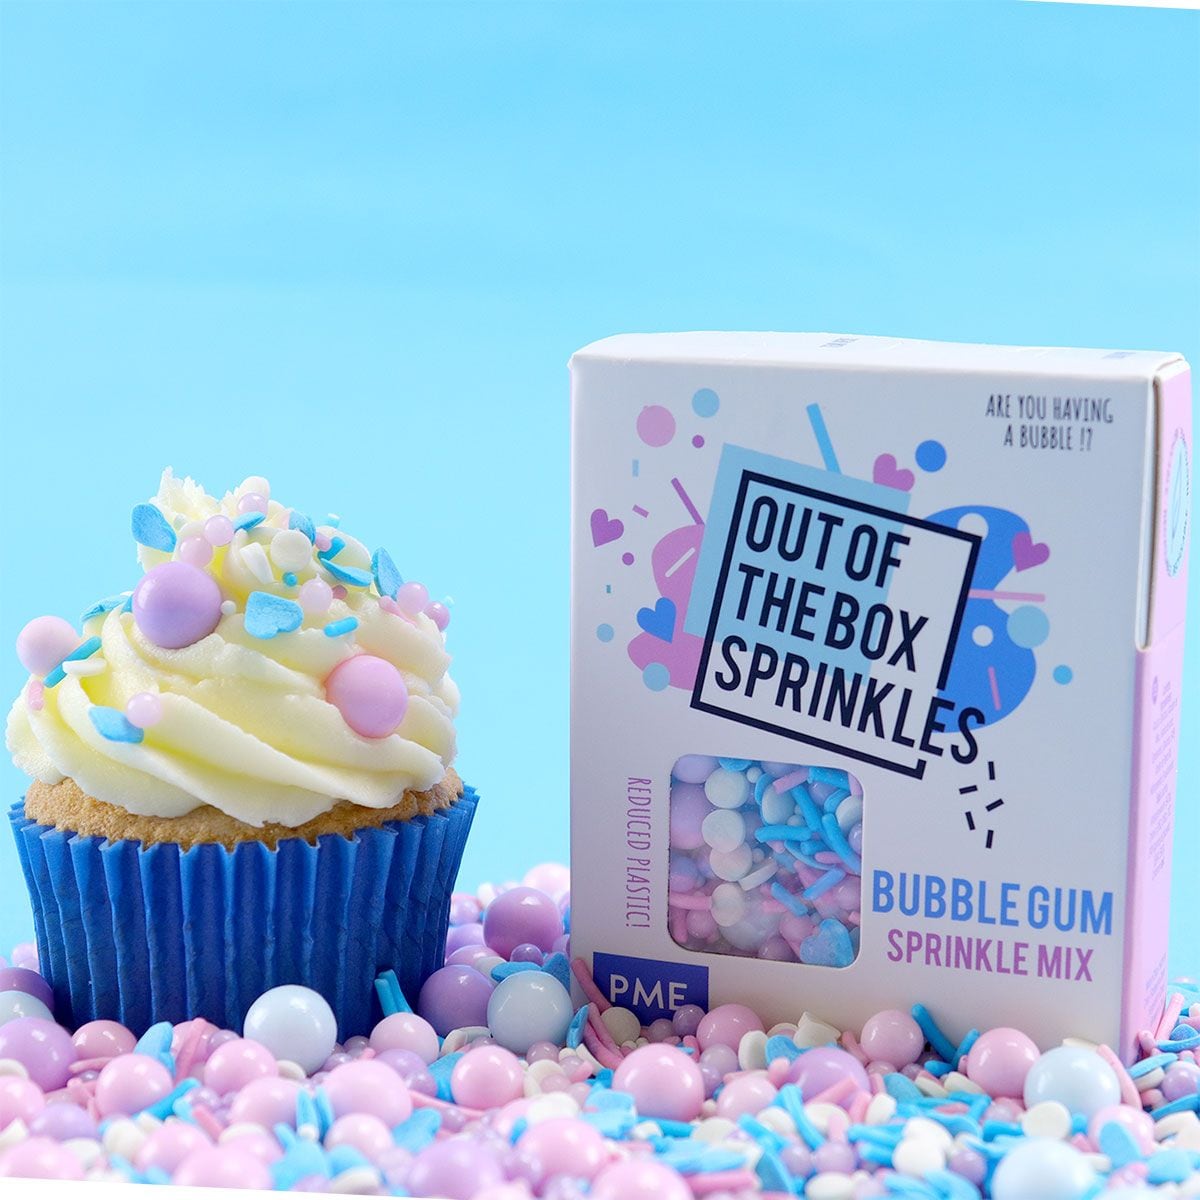 PME Streusel - Bubble Gum 60 g